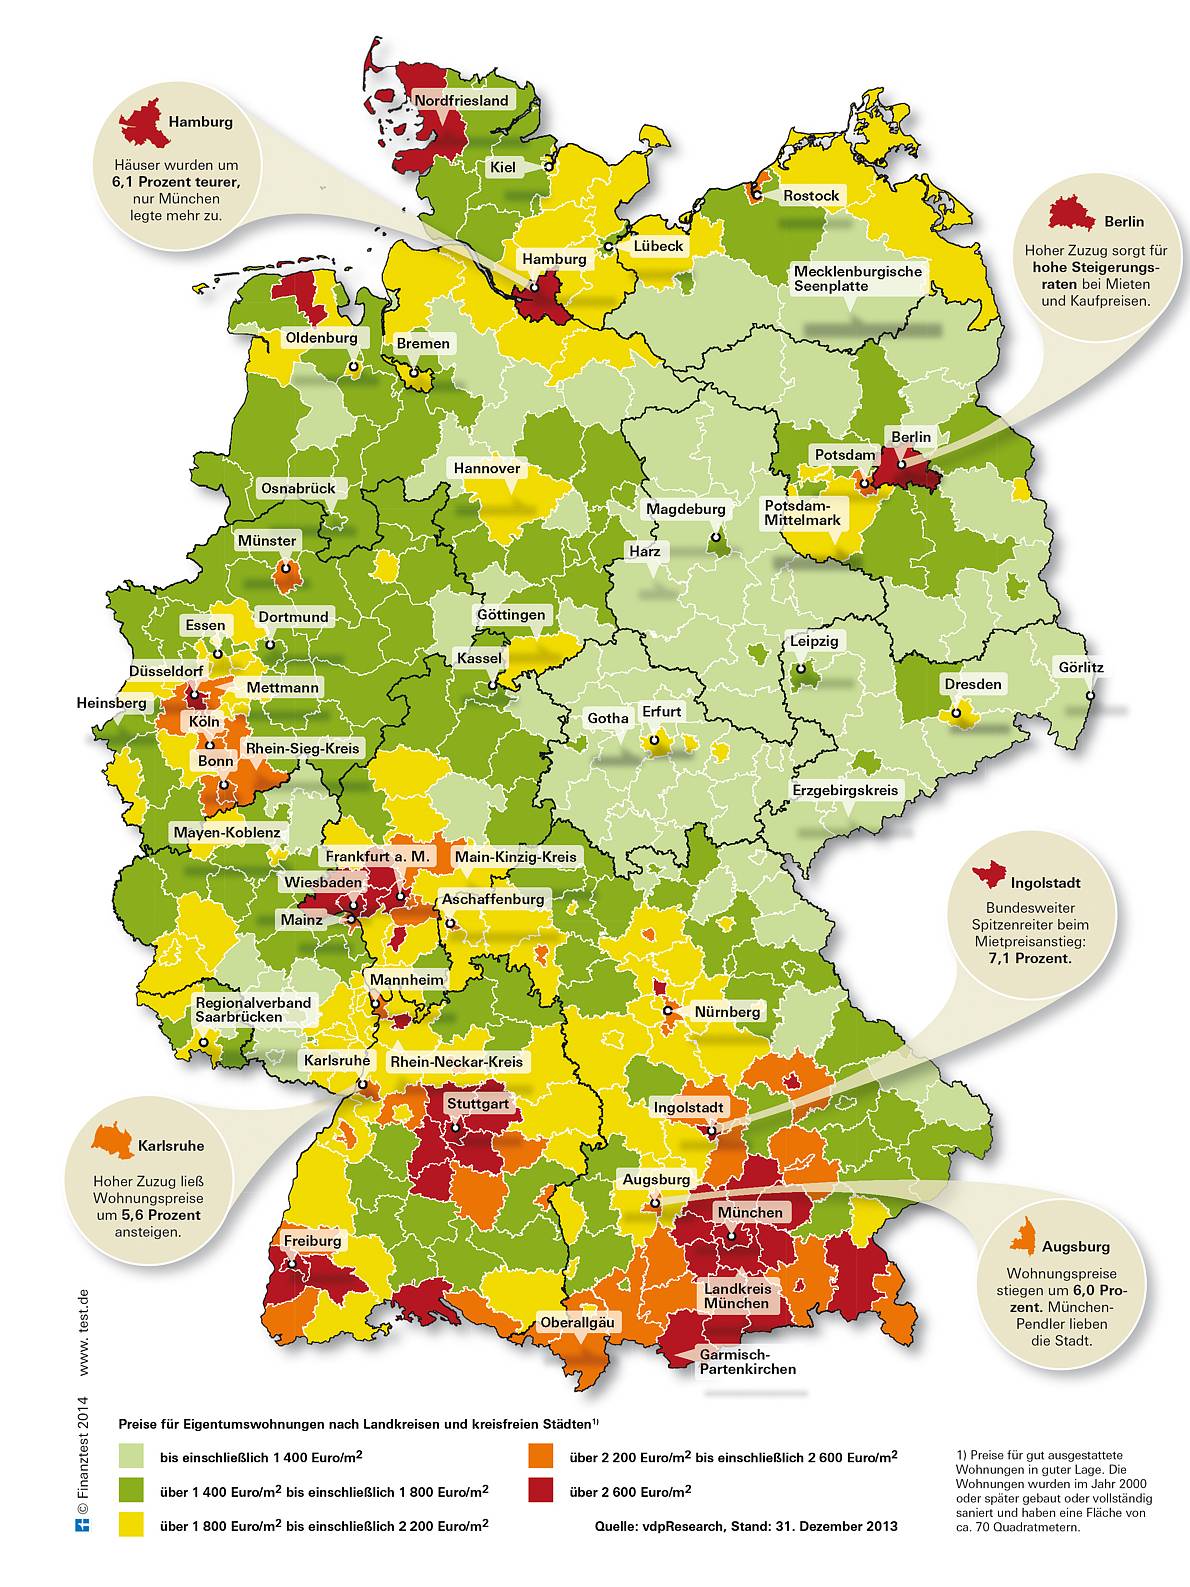 Immobilienkauf 2014 - Quelle: Stiftung Warentest